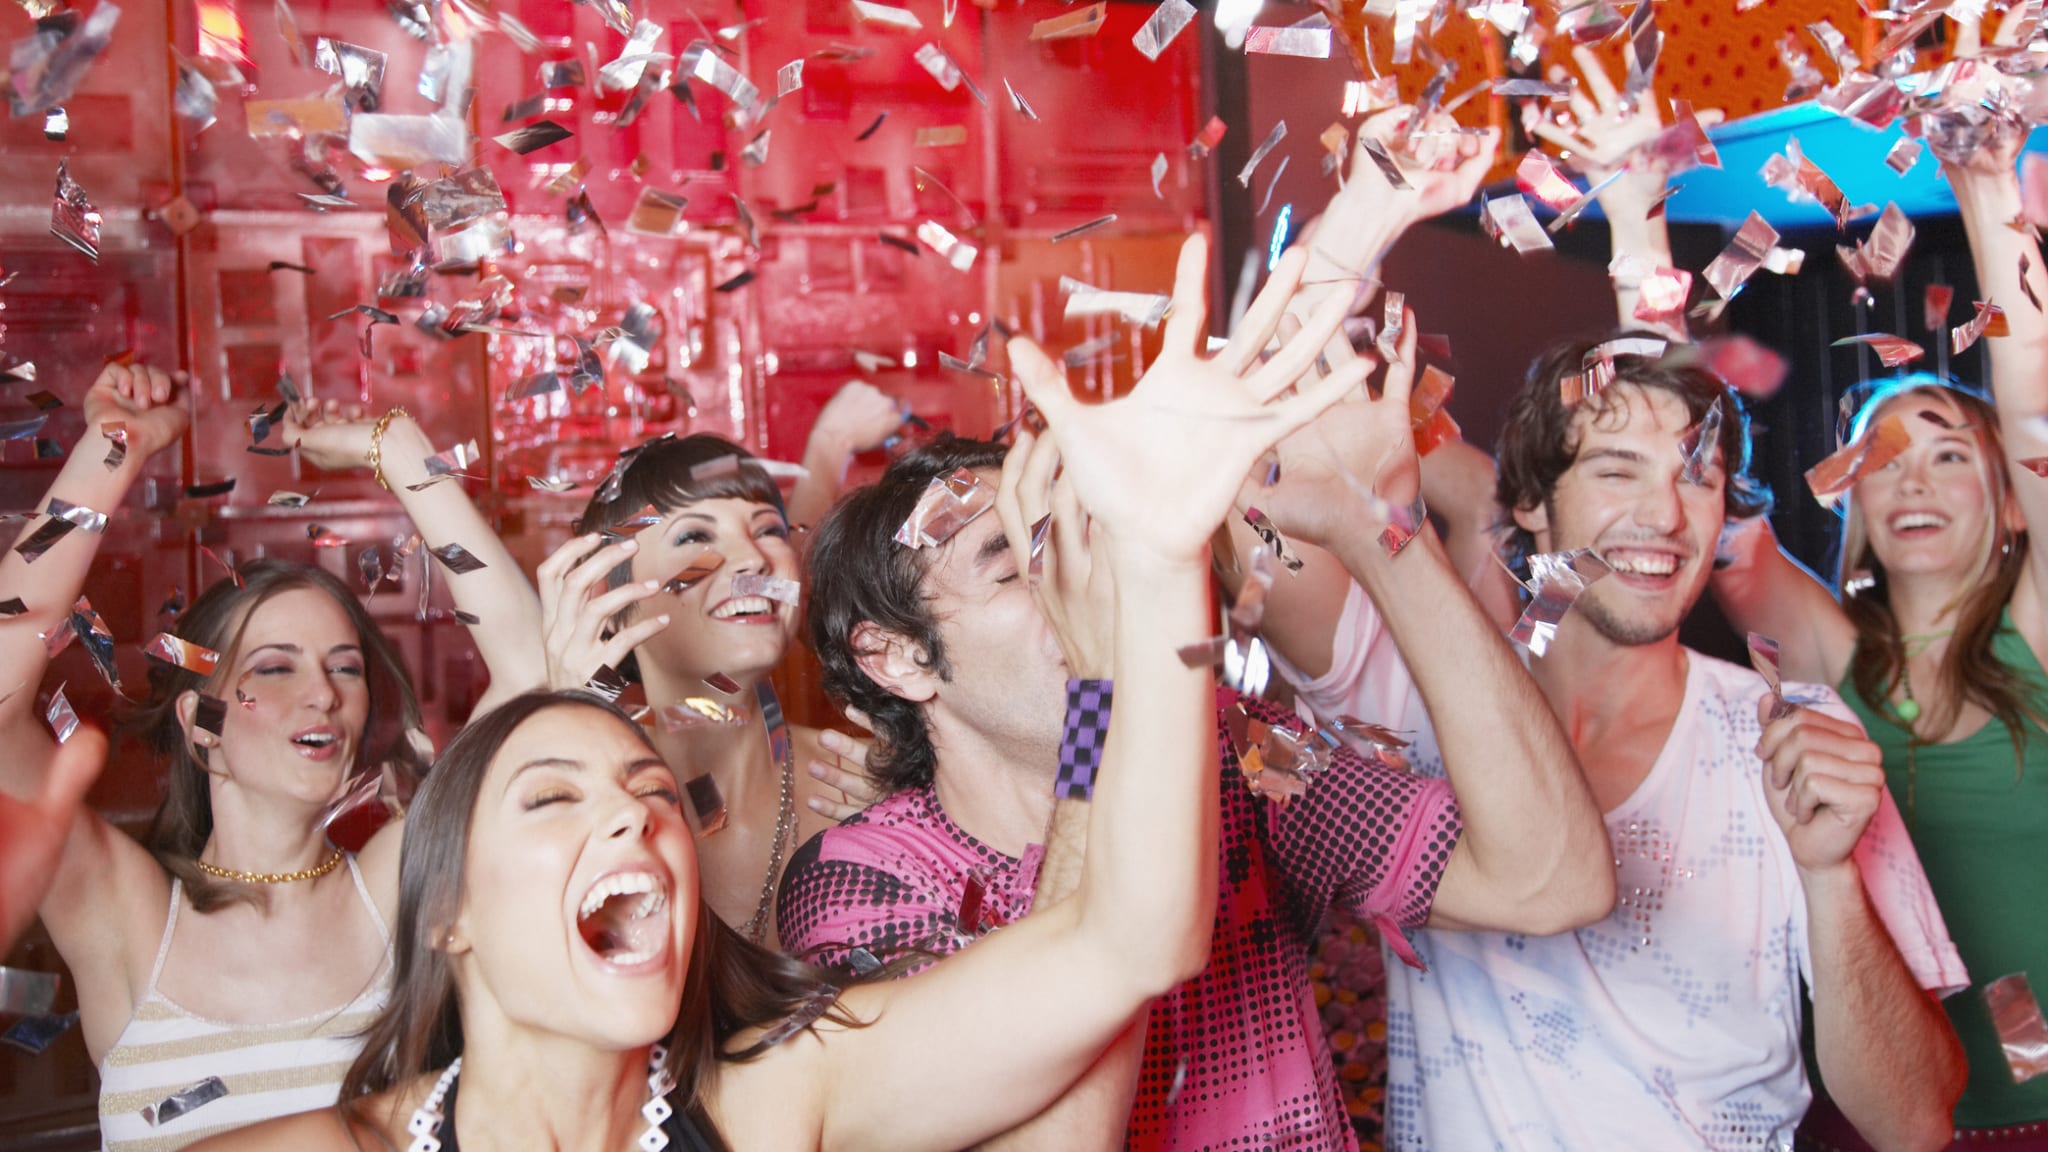 Party in einer Diskothek © Paul Bradbury/OJO Images via Getty Images